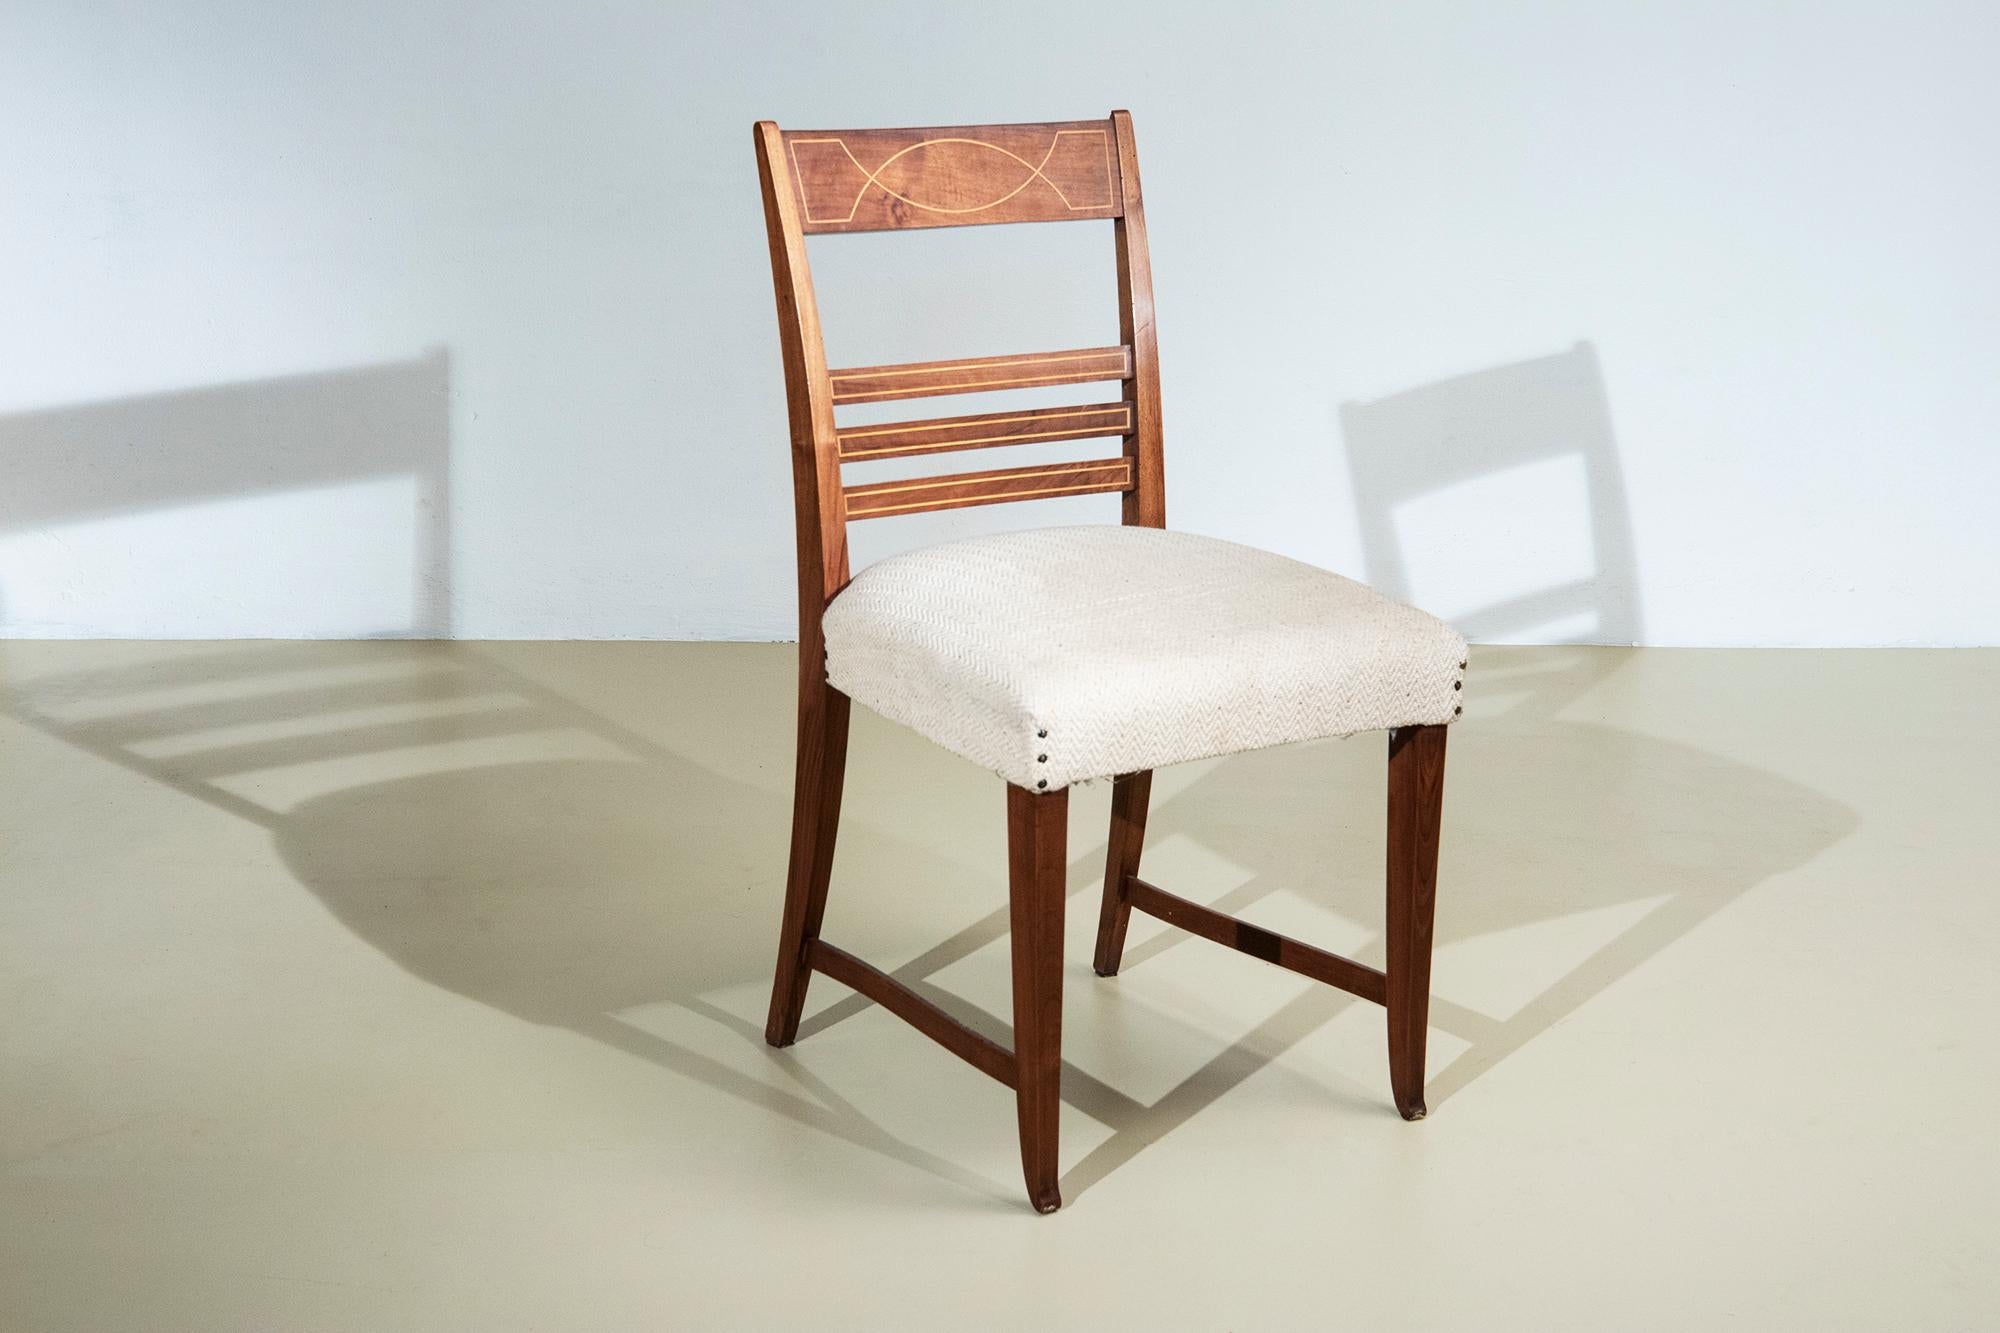 Paolo Buffa, Satz von sechs Stühlen
Sechs Holzstühle, entworfen von Paolo Buffa,  mit eingelegter geometrischer Verzierung in der Rückenlehne, Sitz mit Stoff in Weißtönen gepolstert.
Produziert von Mosè Turri, Italien, um 1950

Bibliographie:
Eredi